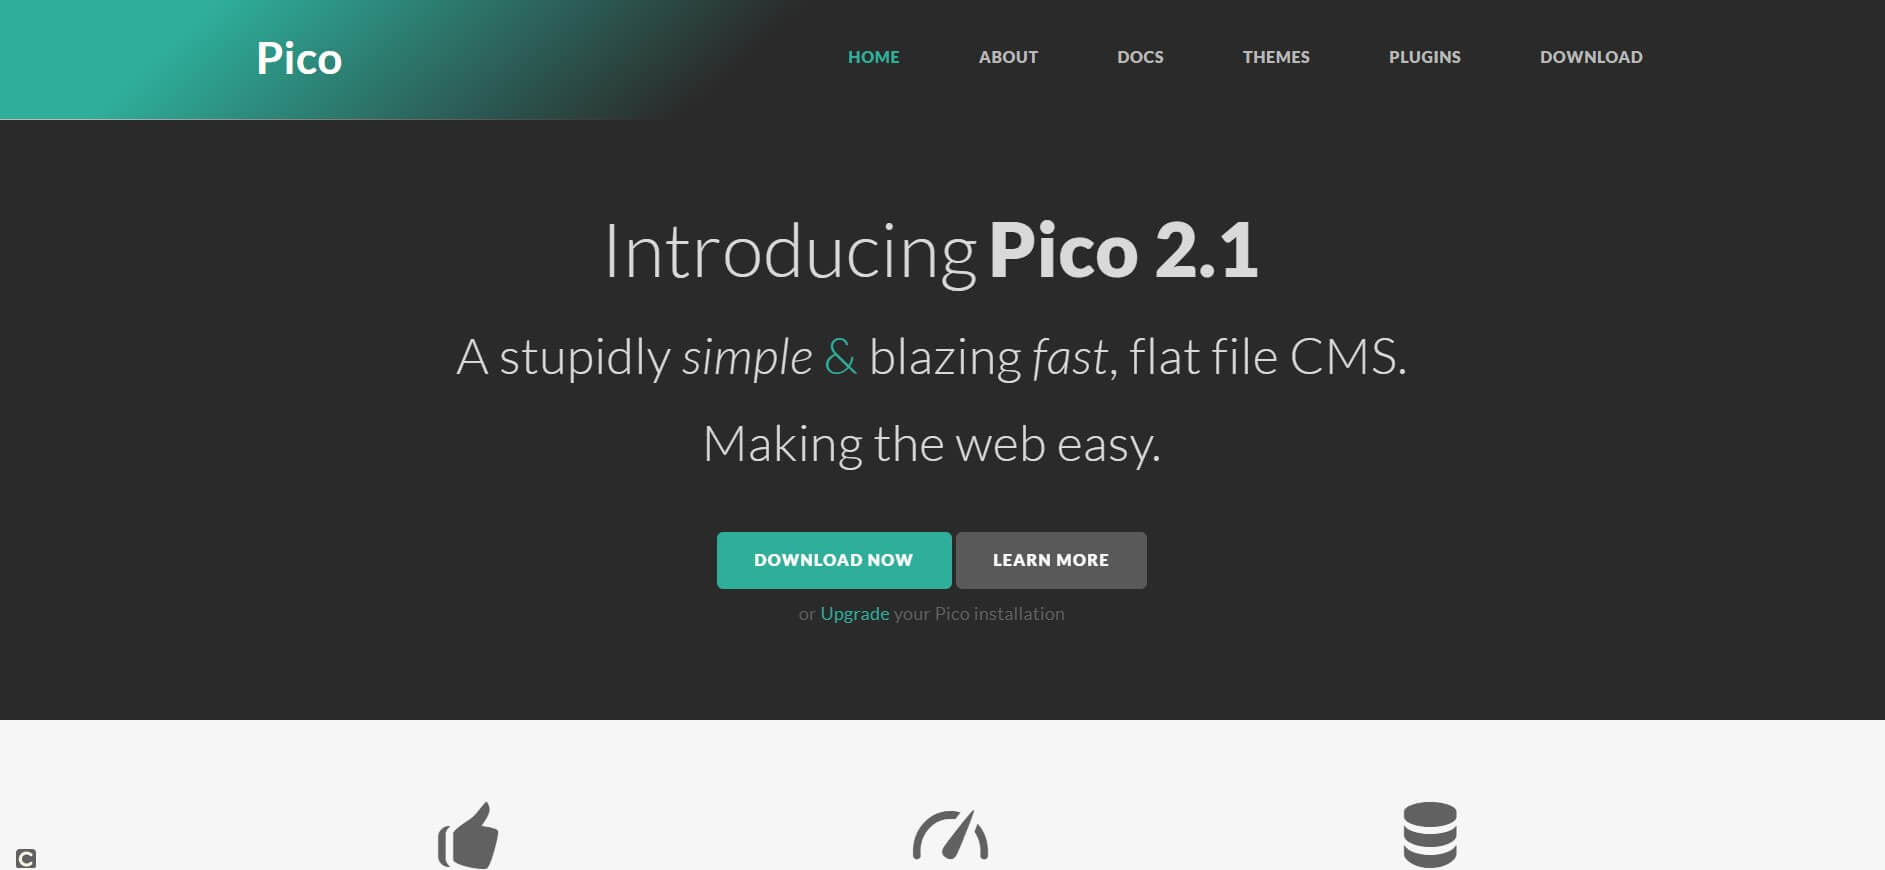 Die Startseite des Pico-Projekts